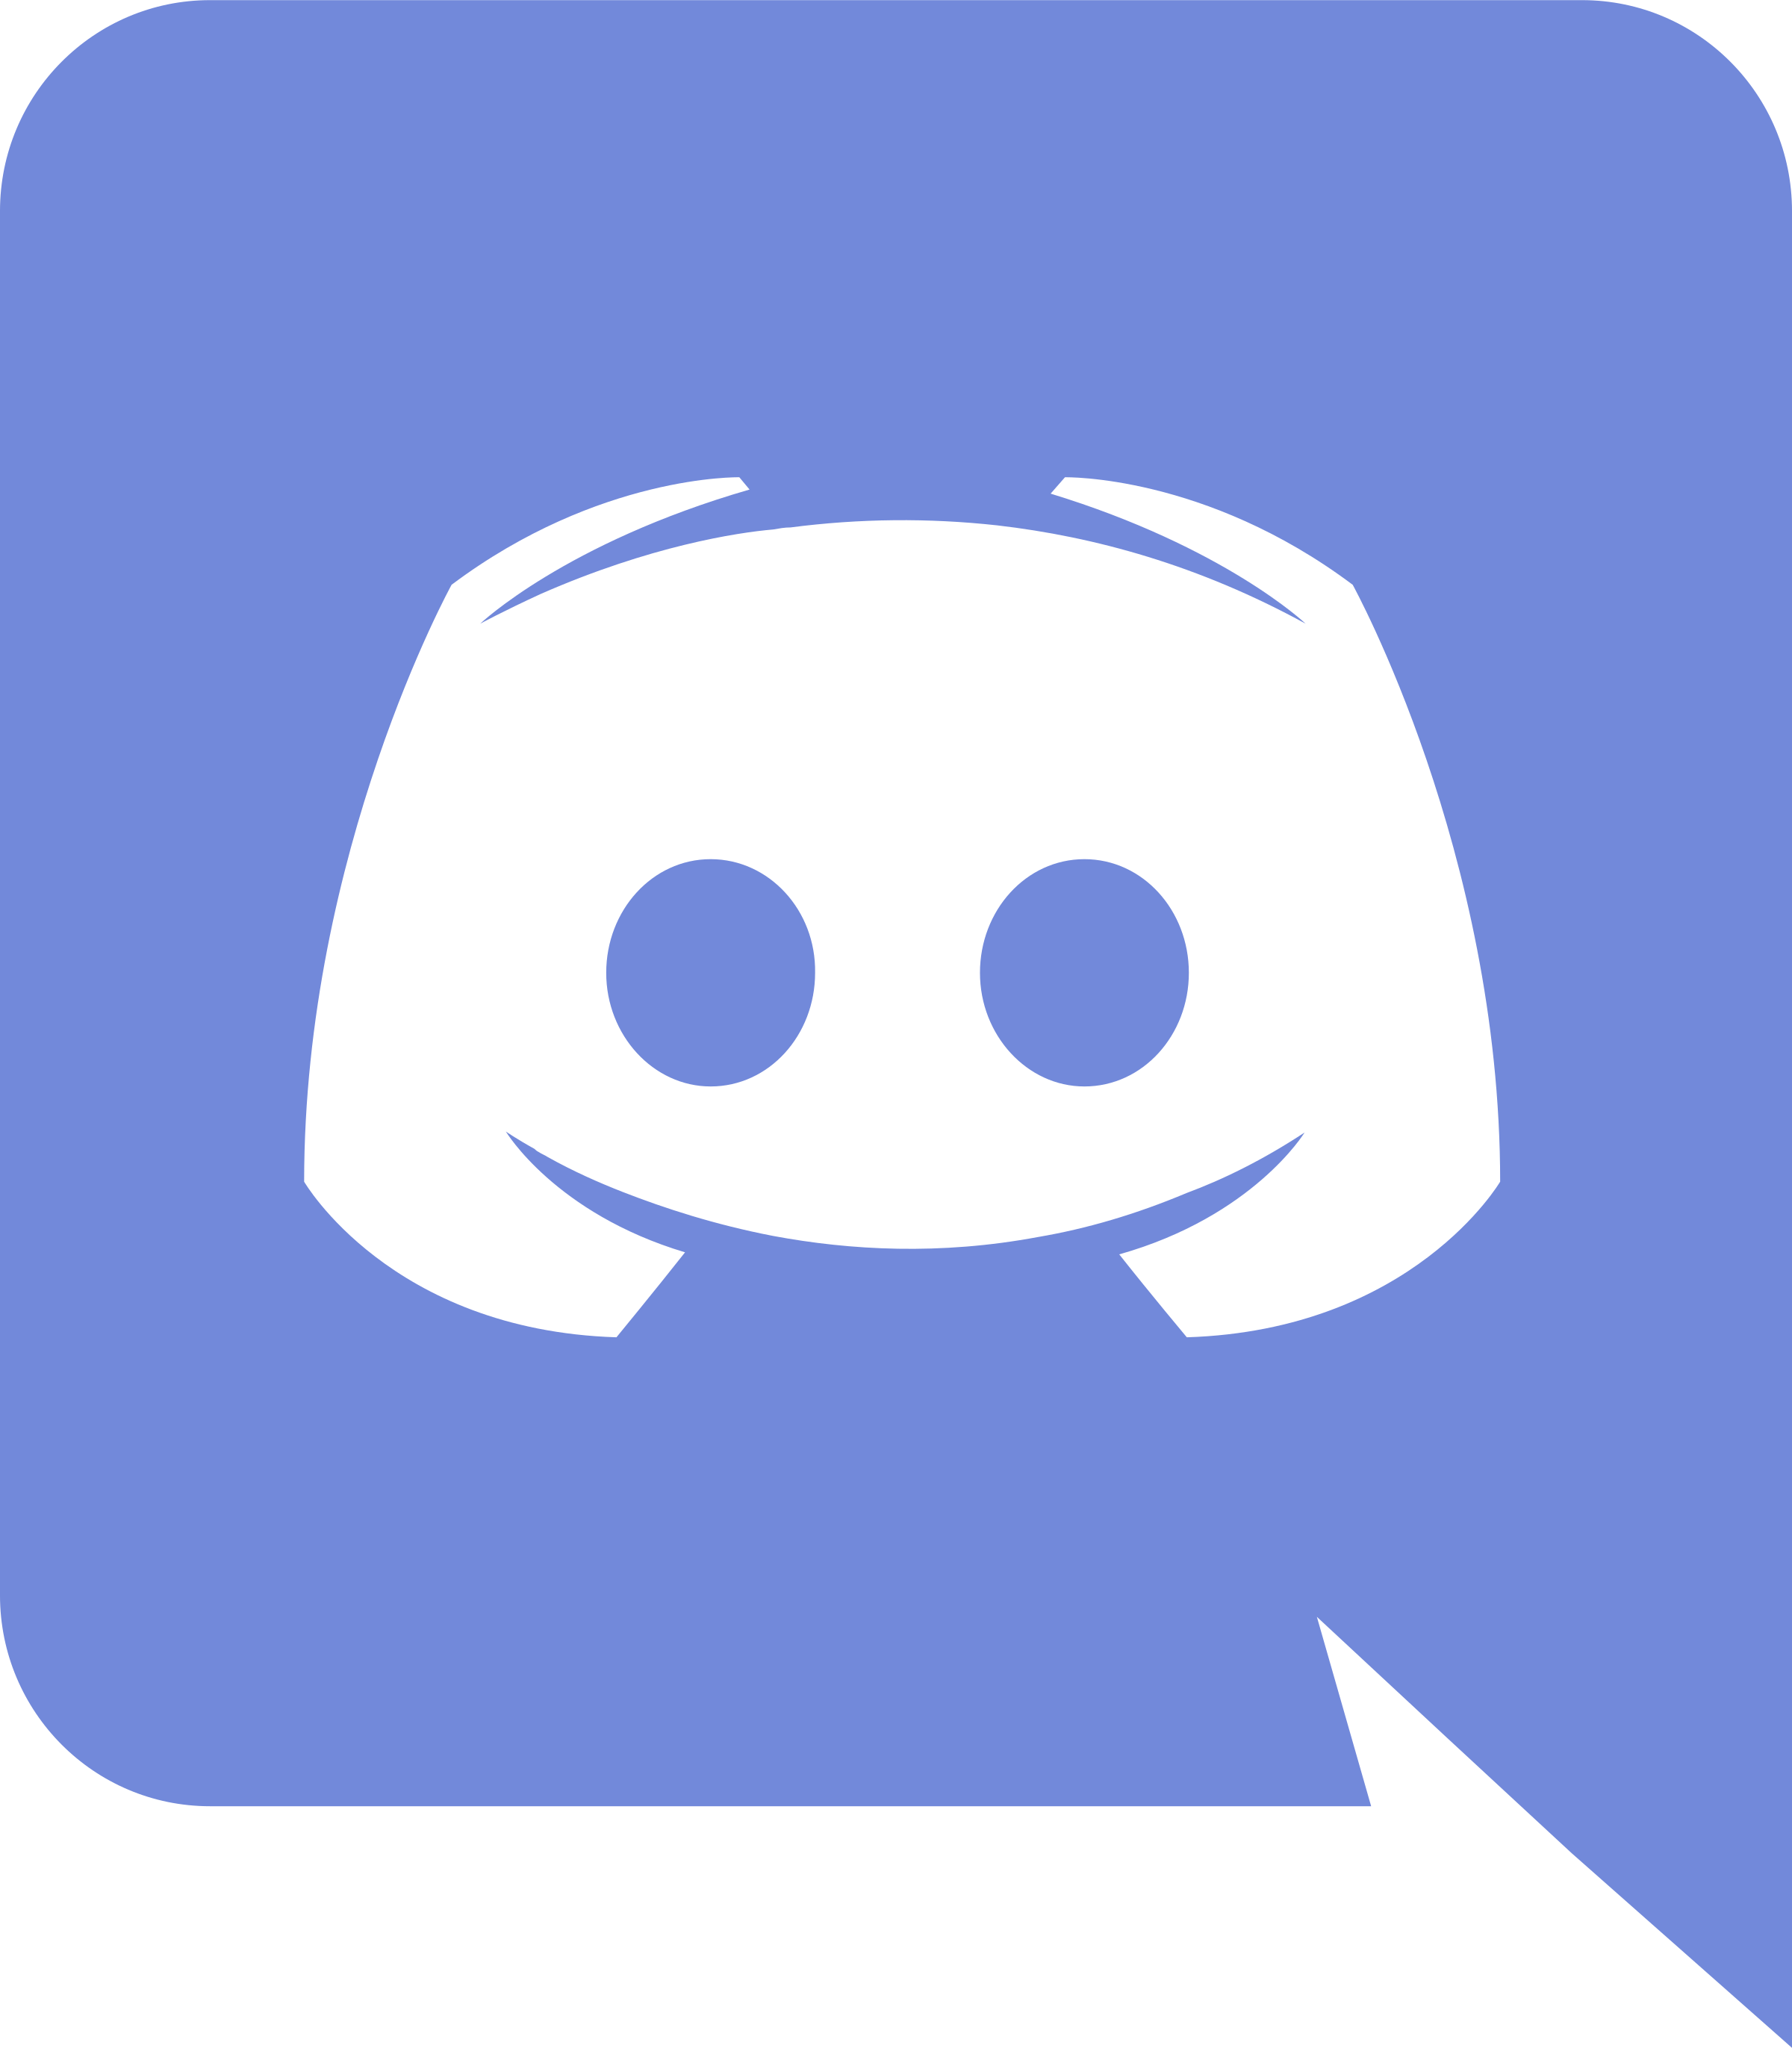 discord logo png transparent